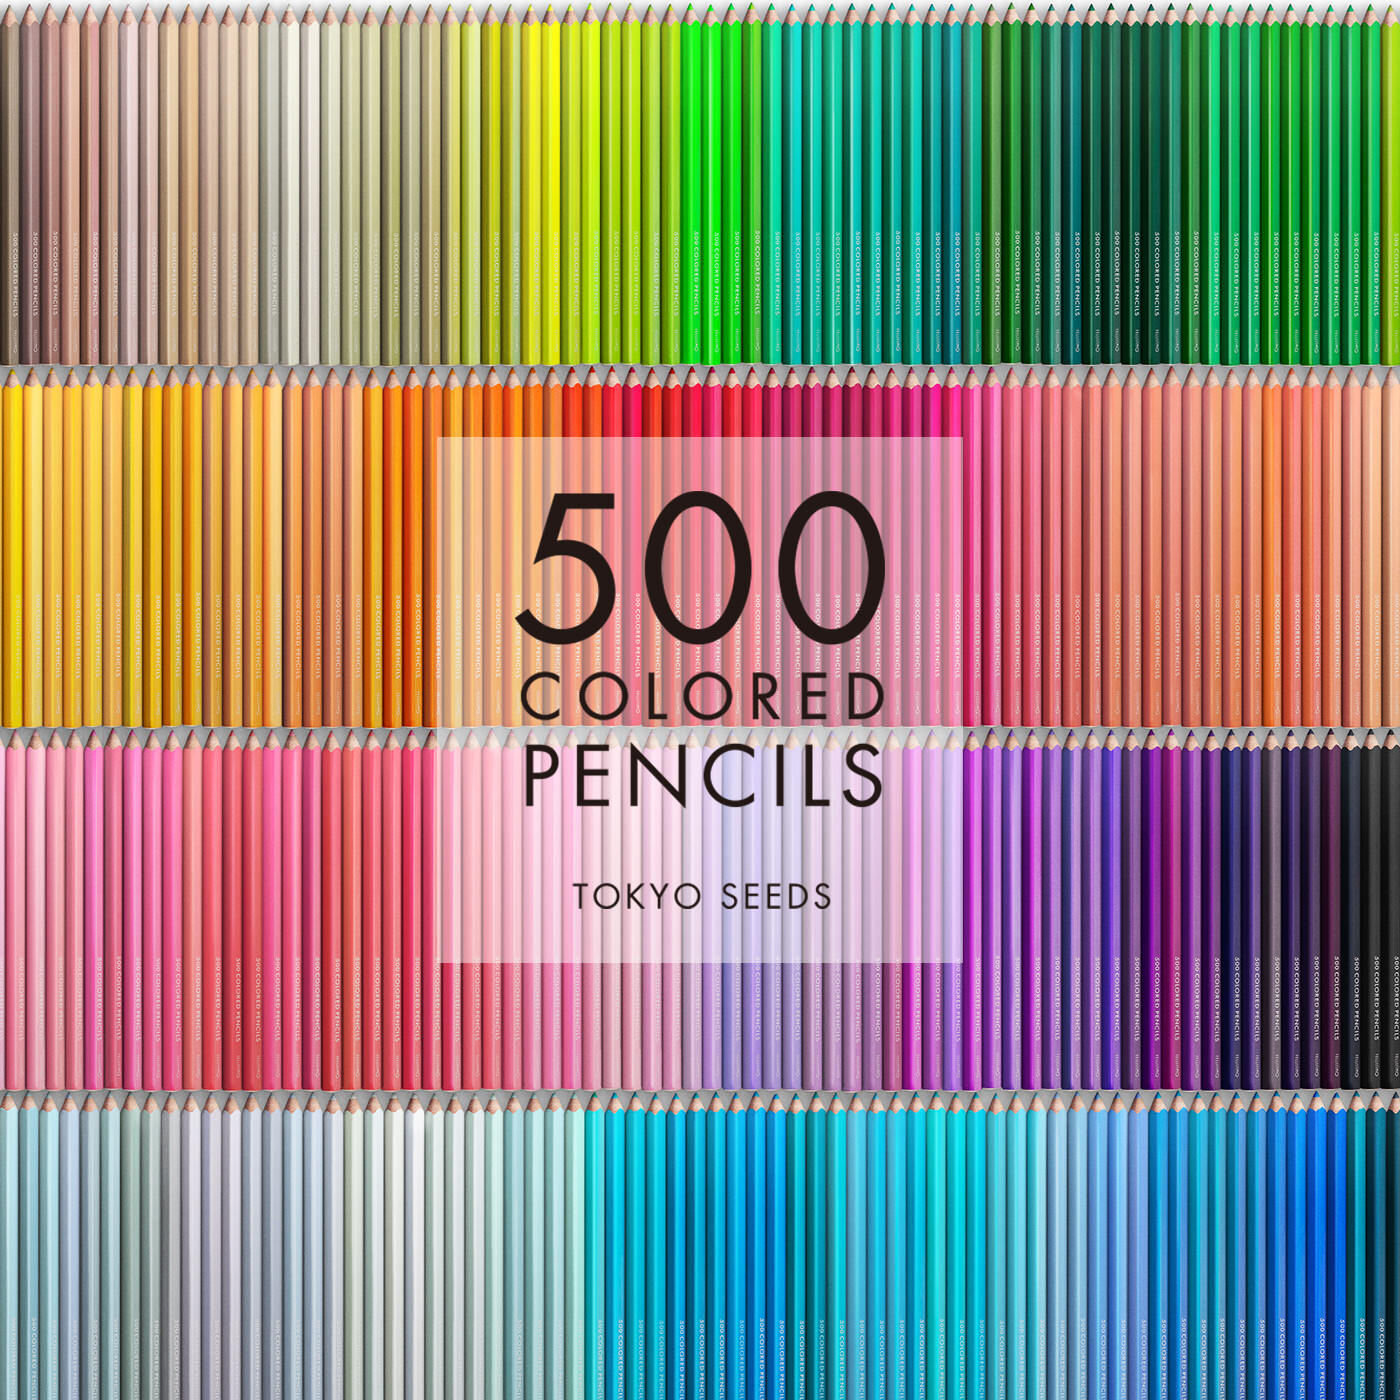 Real Stock|【161/500 PEACH SLICE】500色の色えんぴつ TOKYO SEEDS|1992年、世界初の「500色」という膨大な色数の色えんぴつが誕生して以来、その販売数は発売当初から合わせると、世界55ヵ国10万セット以上。今回、メイド・イン・ジャパンにこだわり、すべてが新しく生まれ変わって登場しました。